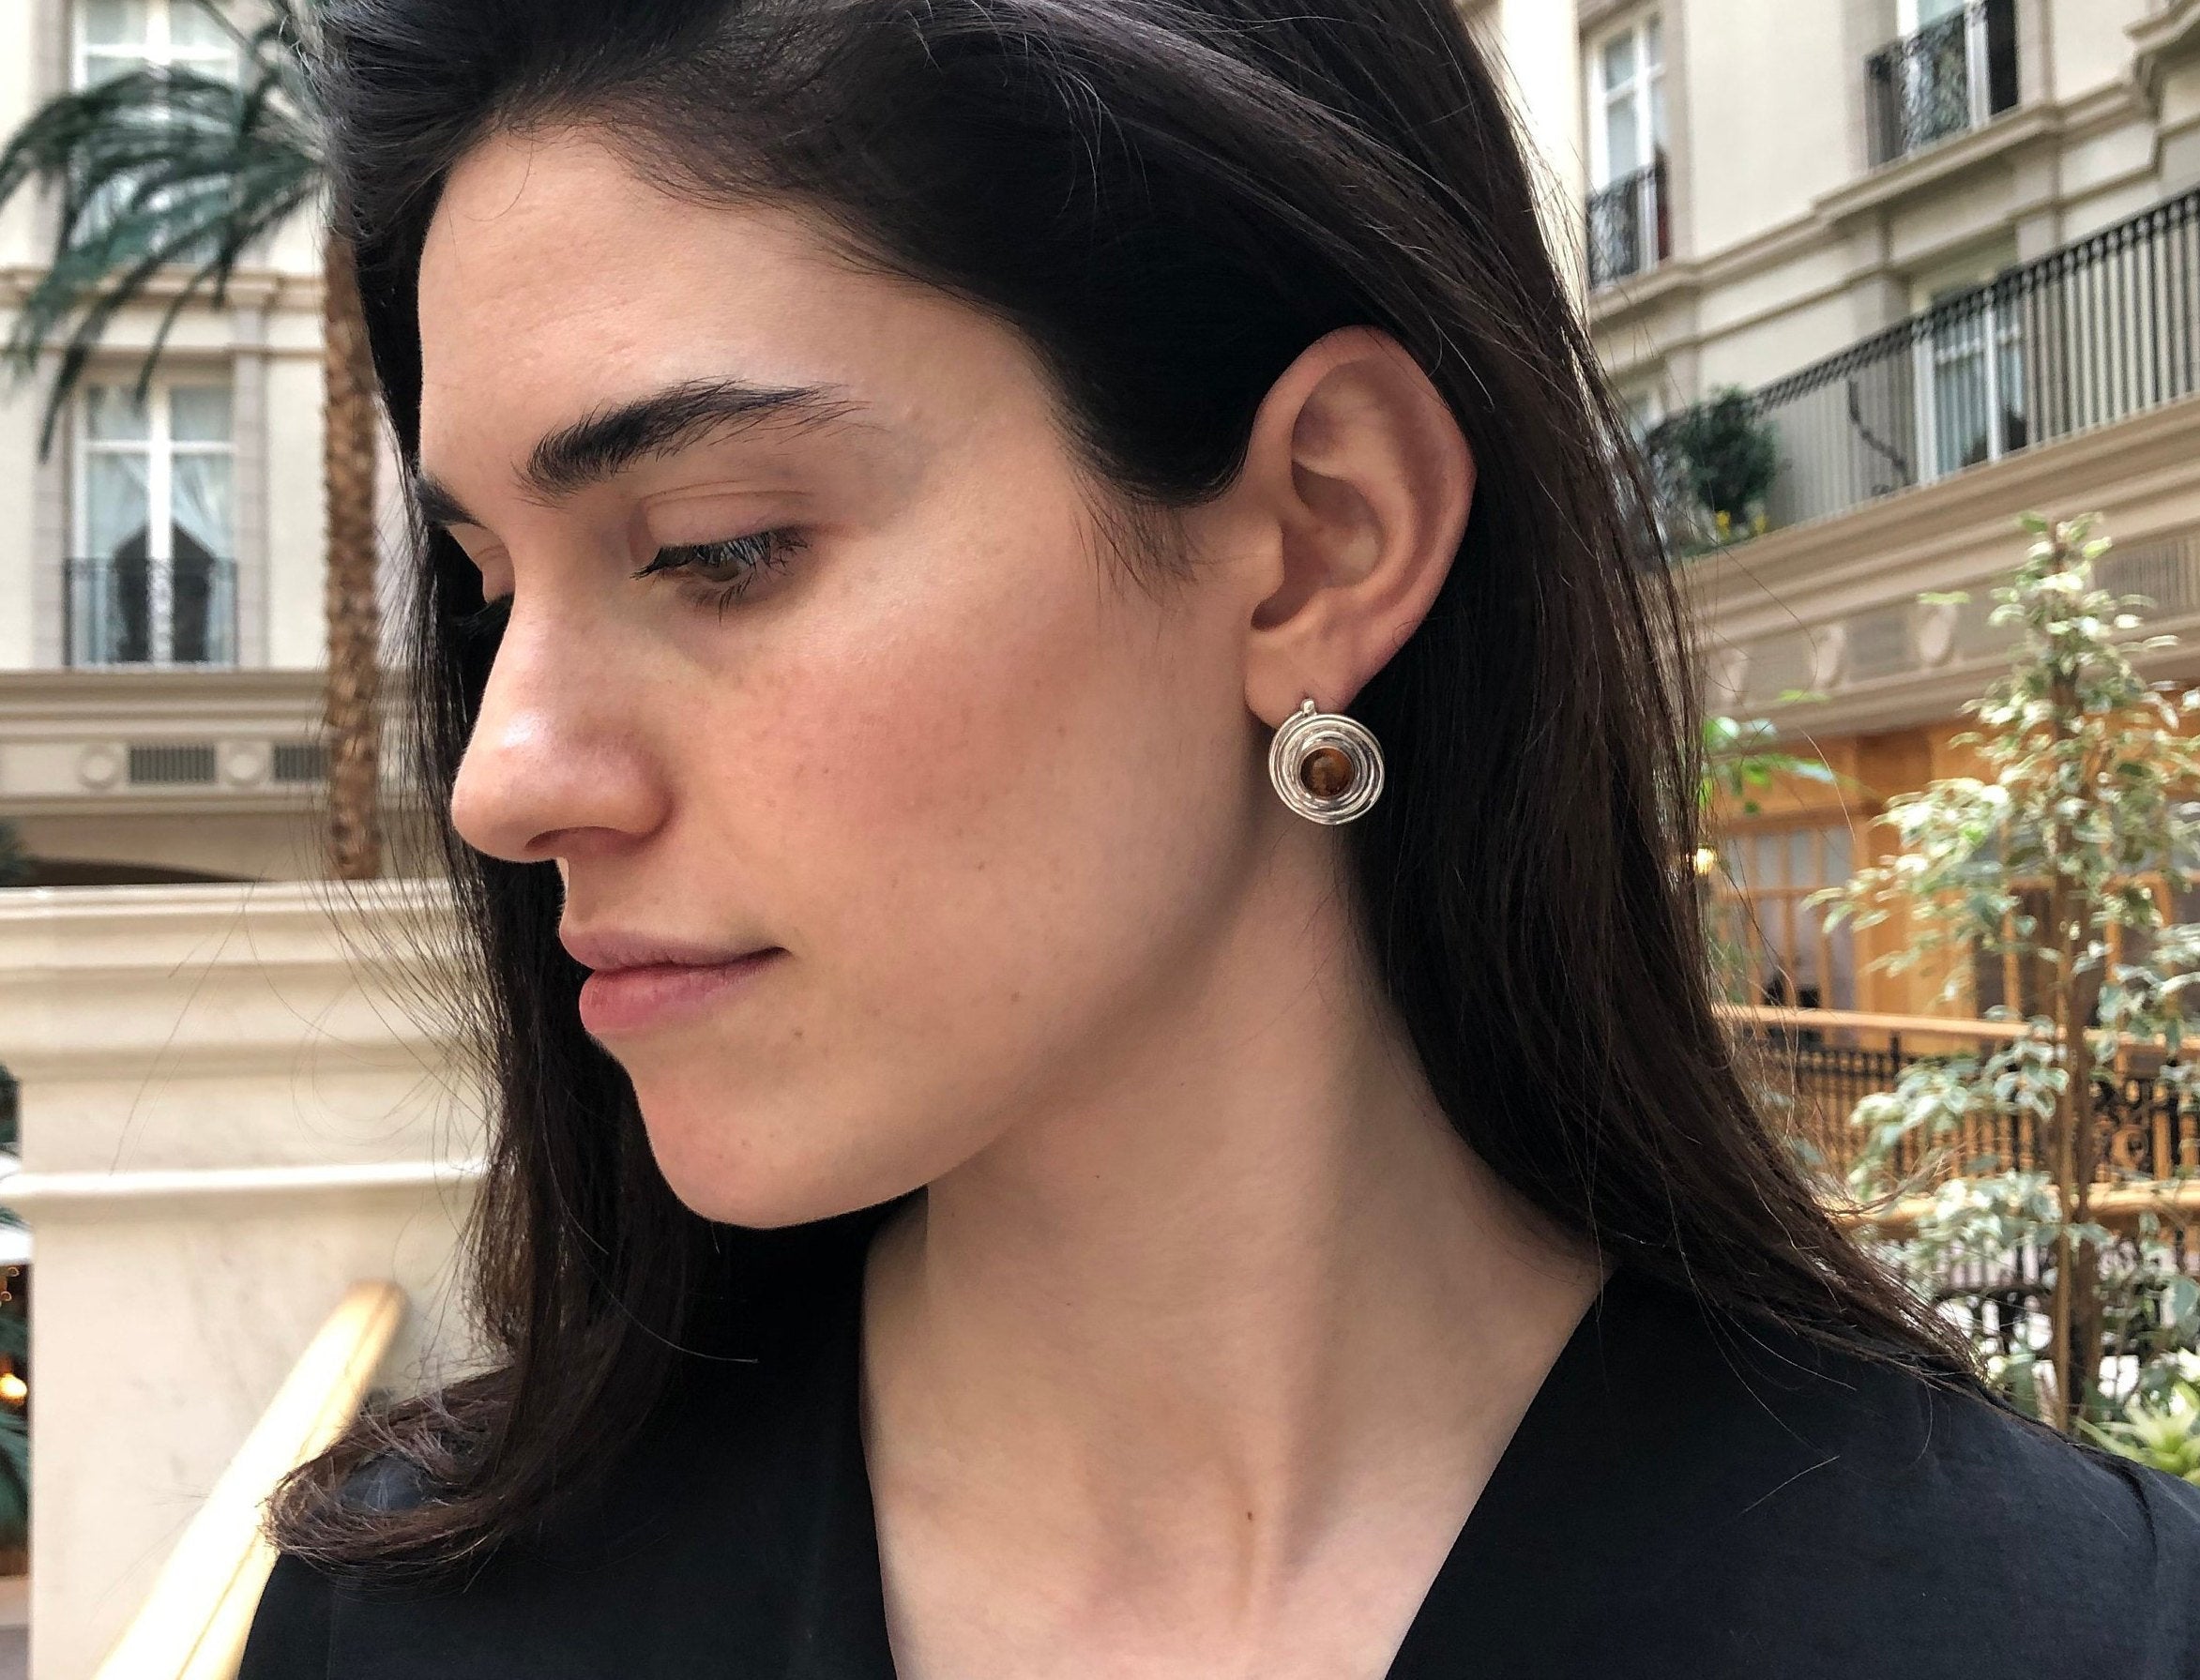 stud chanel earrings gold silver